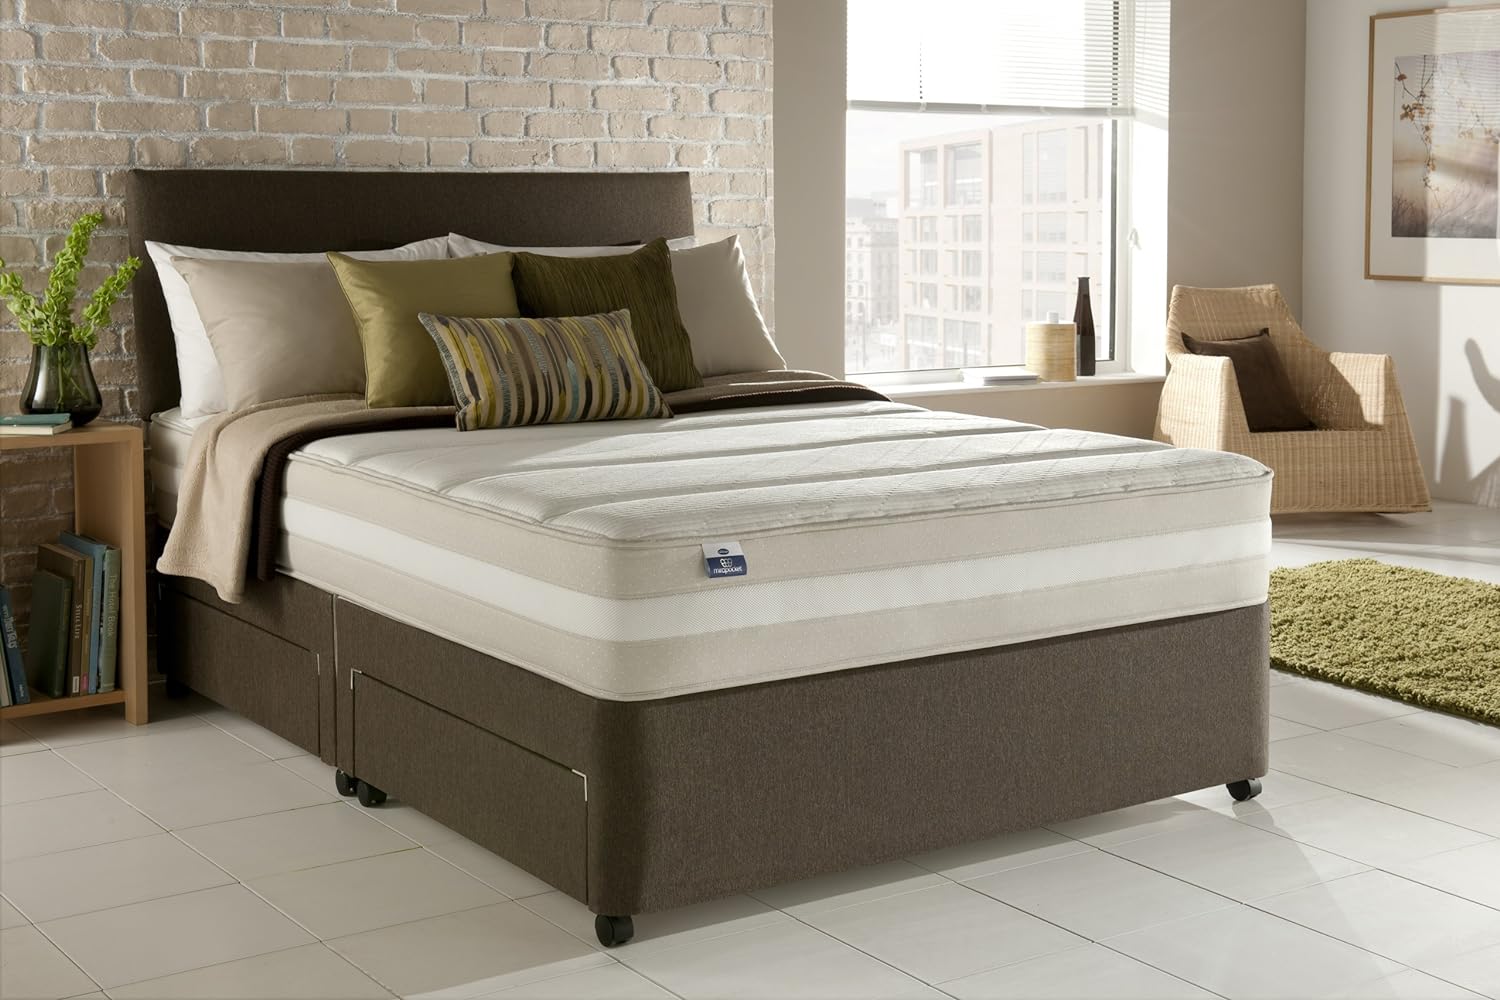 Как правильно подобрать кровать. Кровать обычная. Кровать для тяжелых людей. Идеальная кровать. Кровать для большого веса.